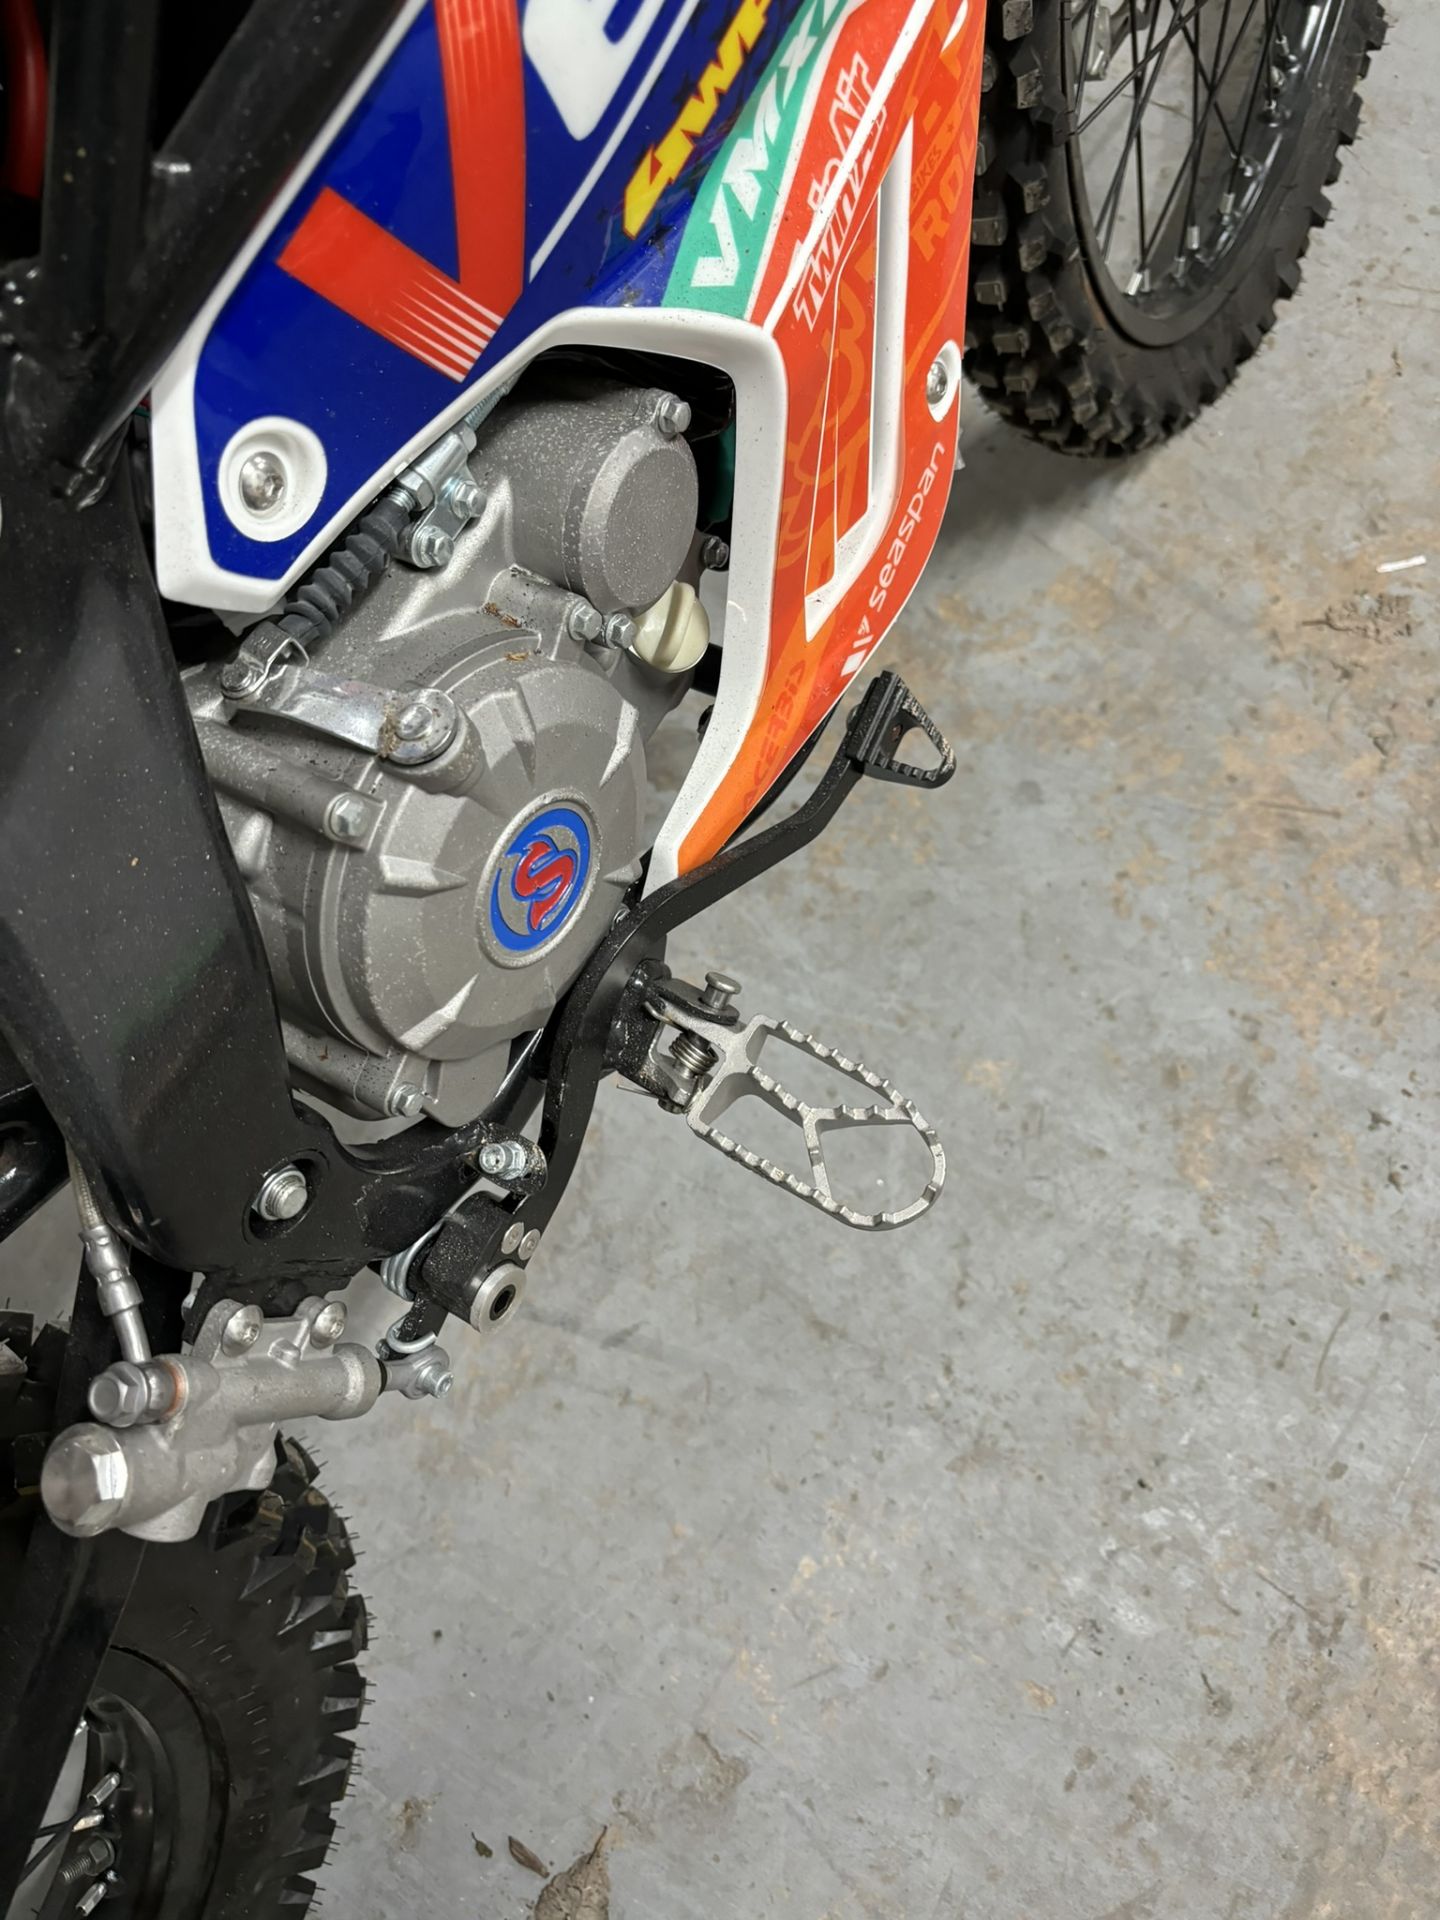 Velimotor VMX12 Electric Motorcycle / Dirt Bike - Image 15 of 24